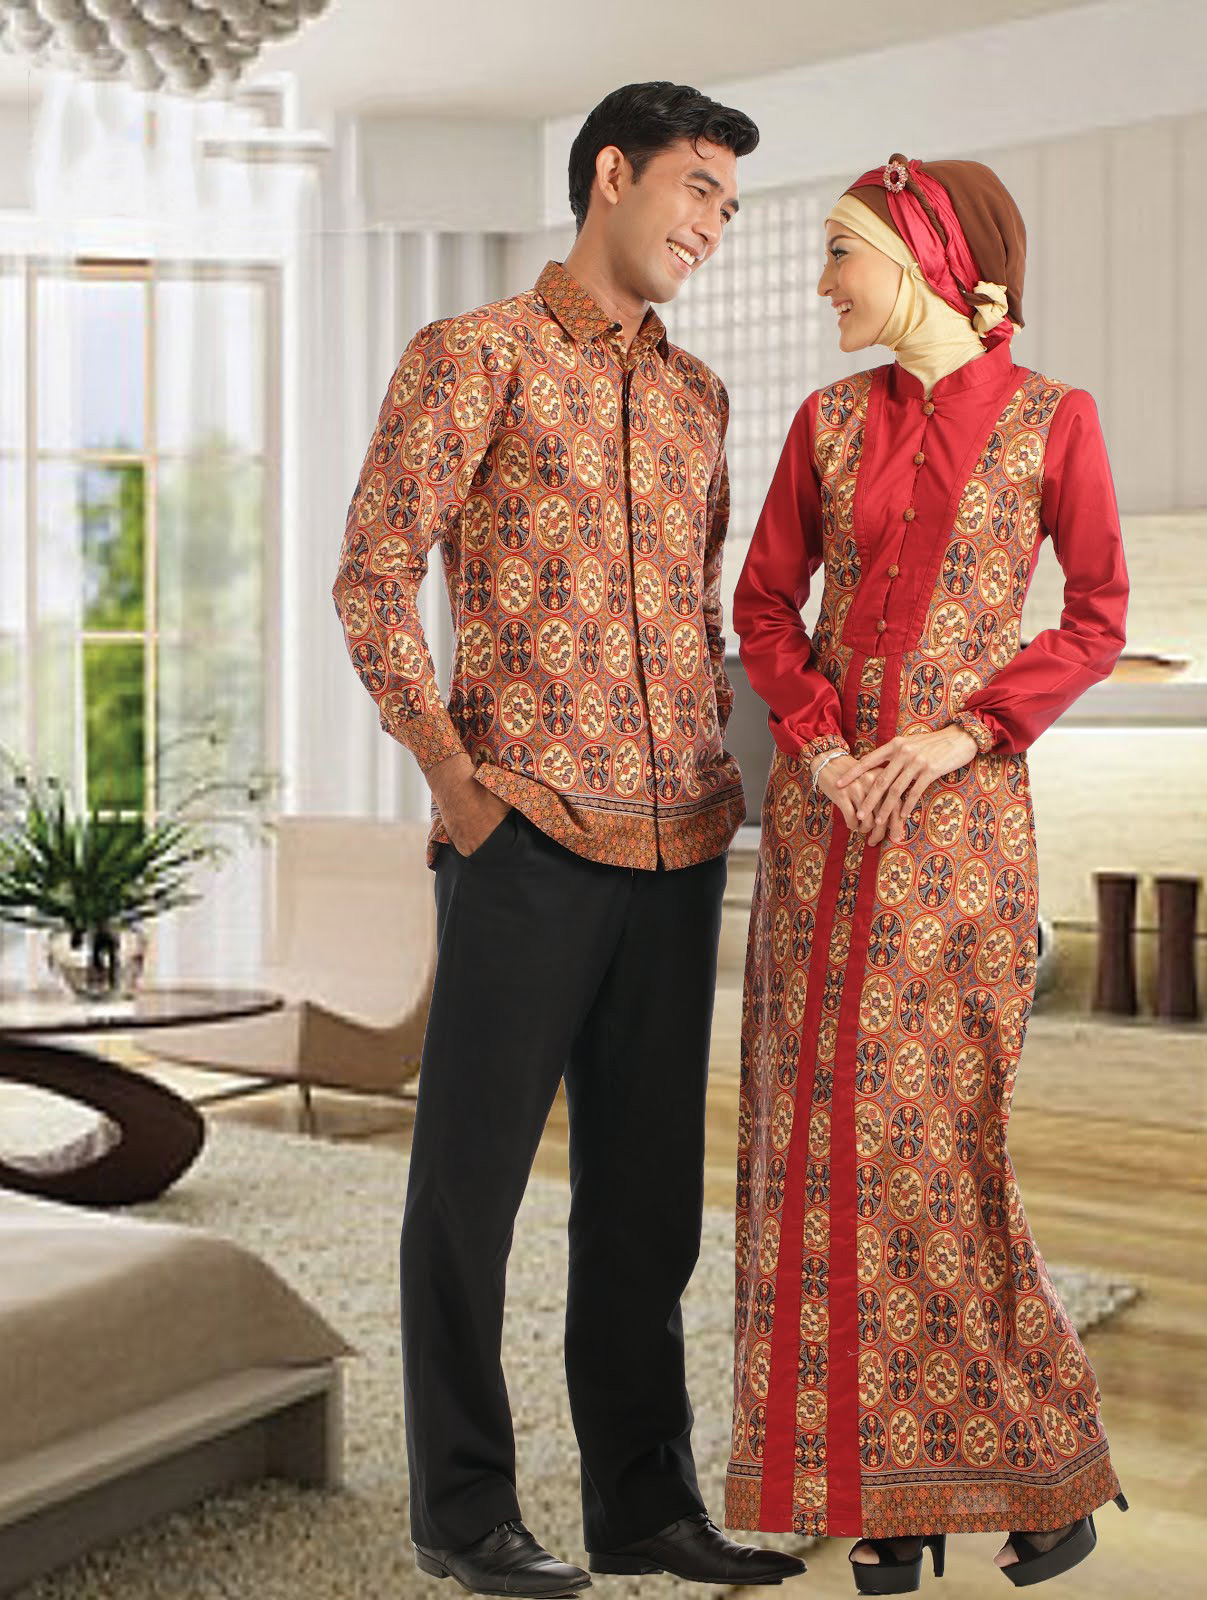 Trend Model Baju Batik Lebaran Terbaru 2013